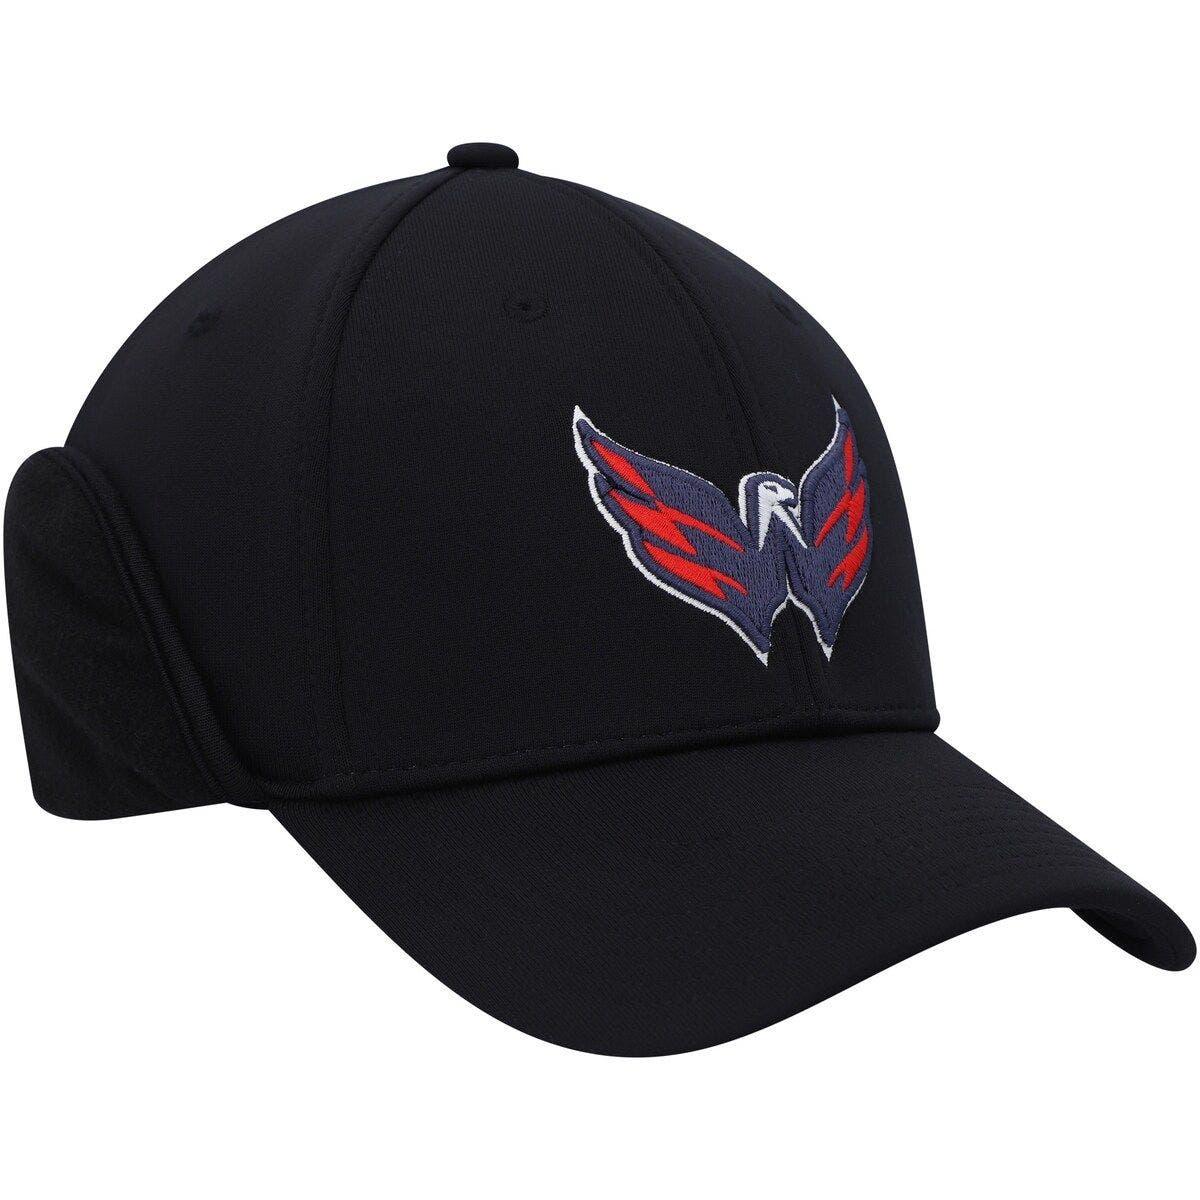 Buffalo Sabres adidas Military Appreciation Flex Hat - Camo/Black